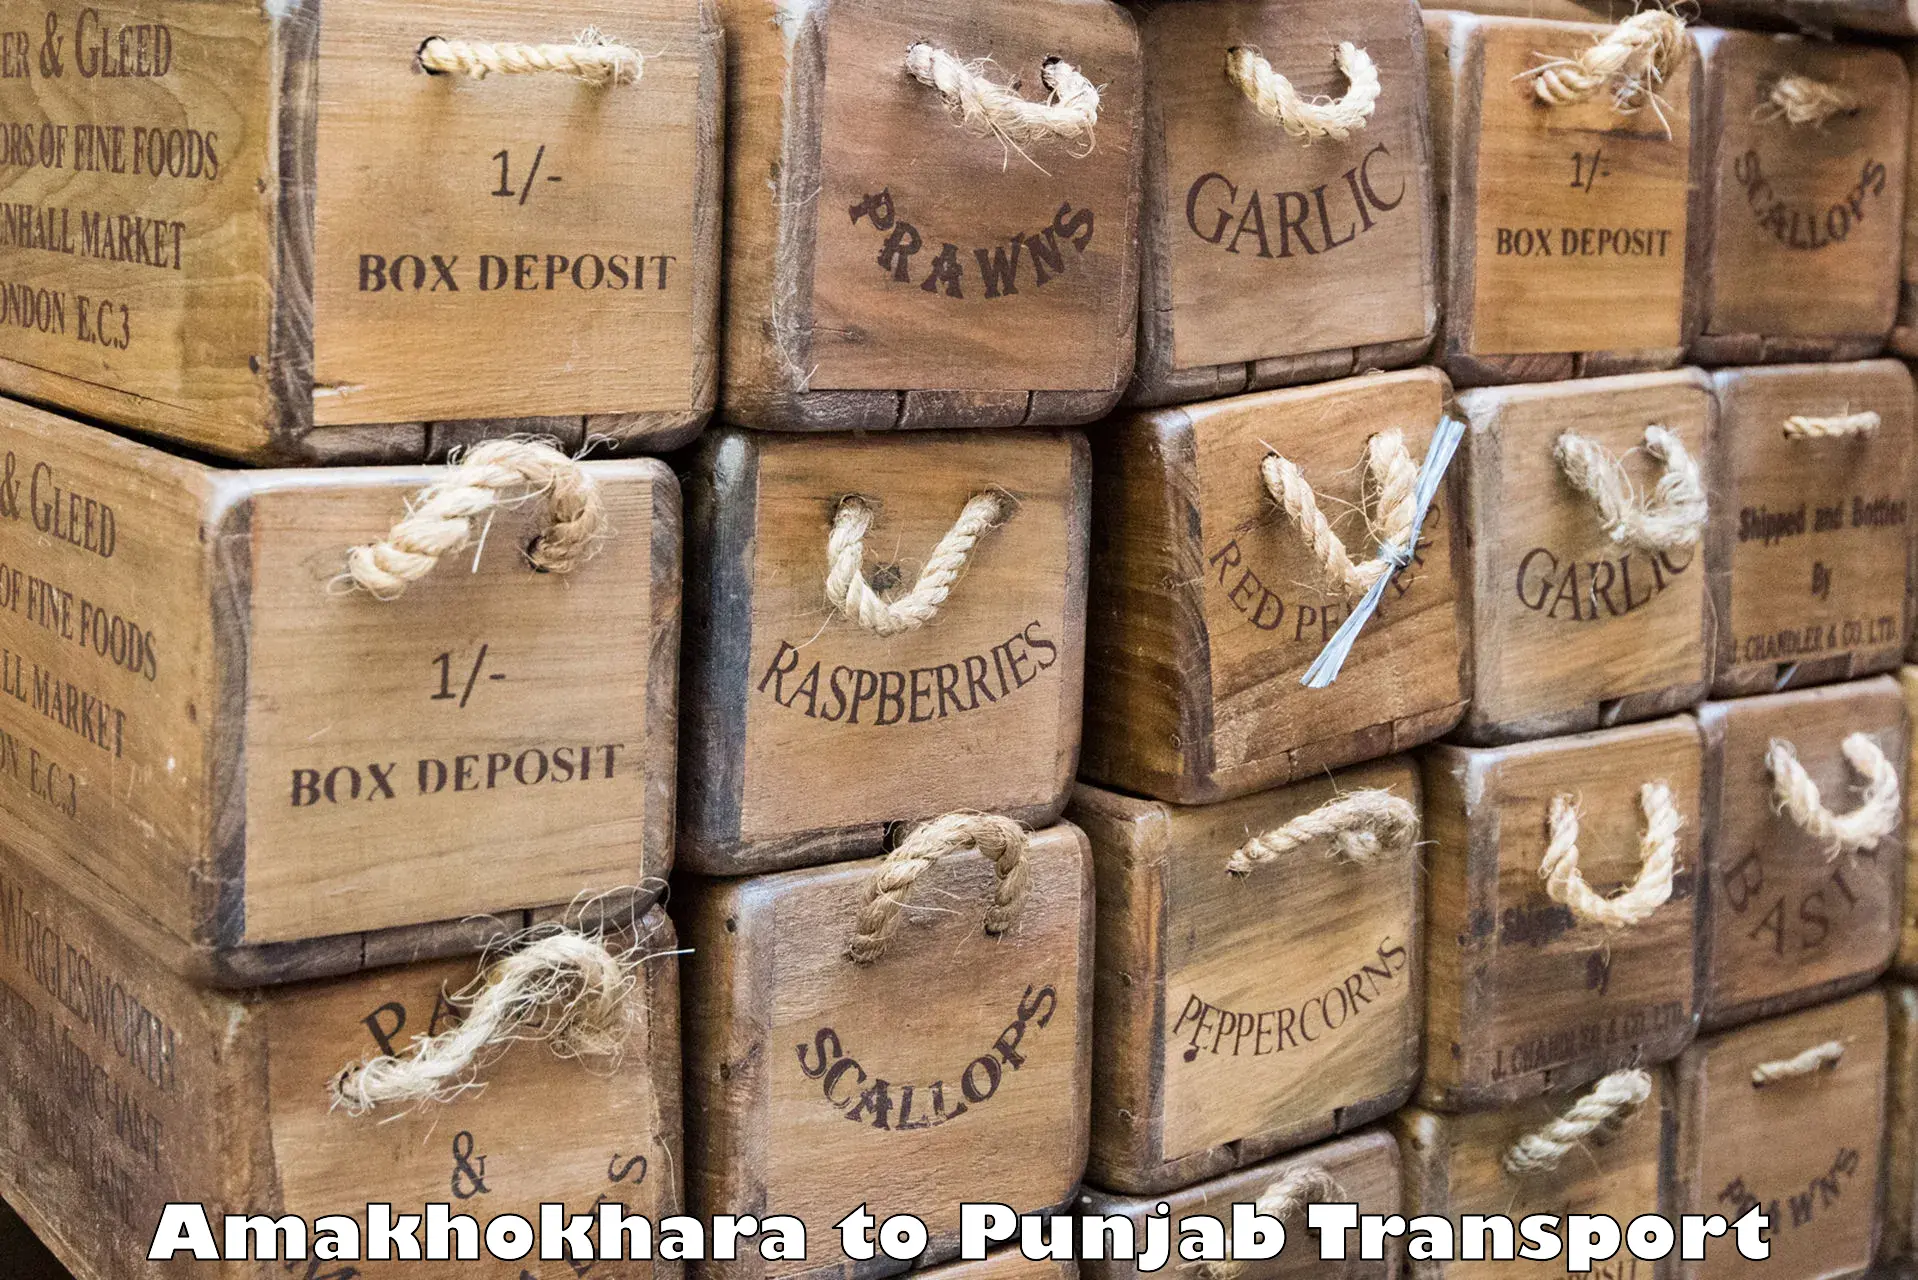 Shipping services Amakhokhara to Dinanagar